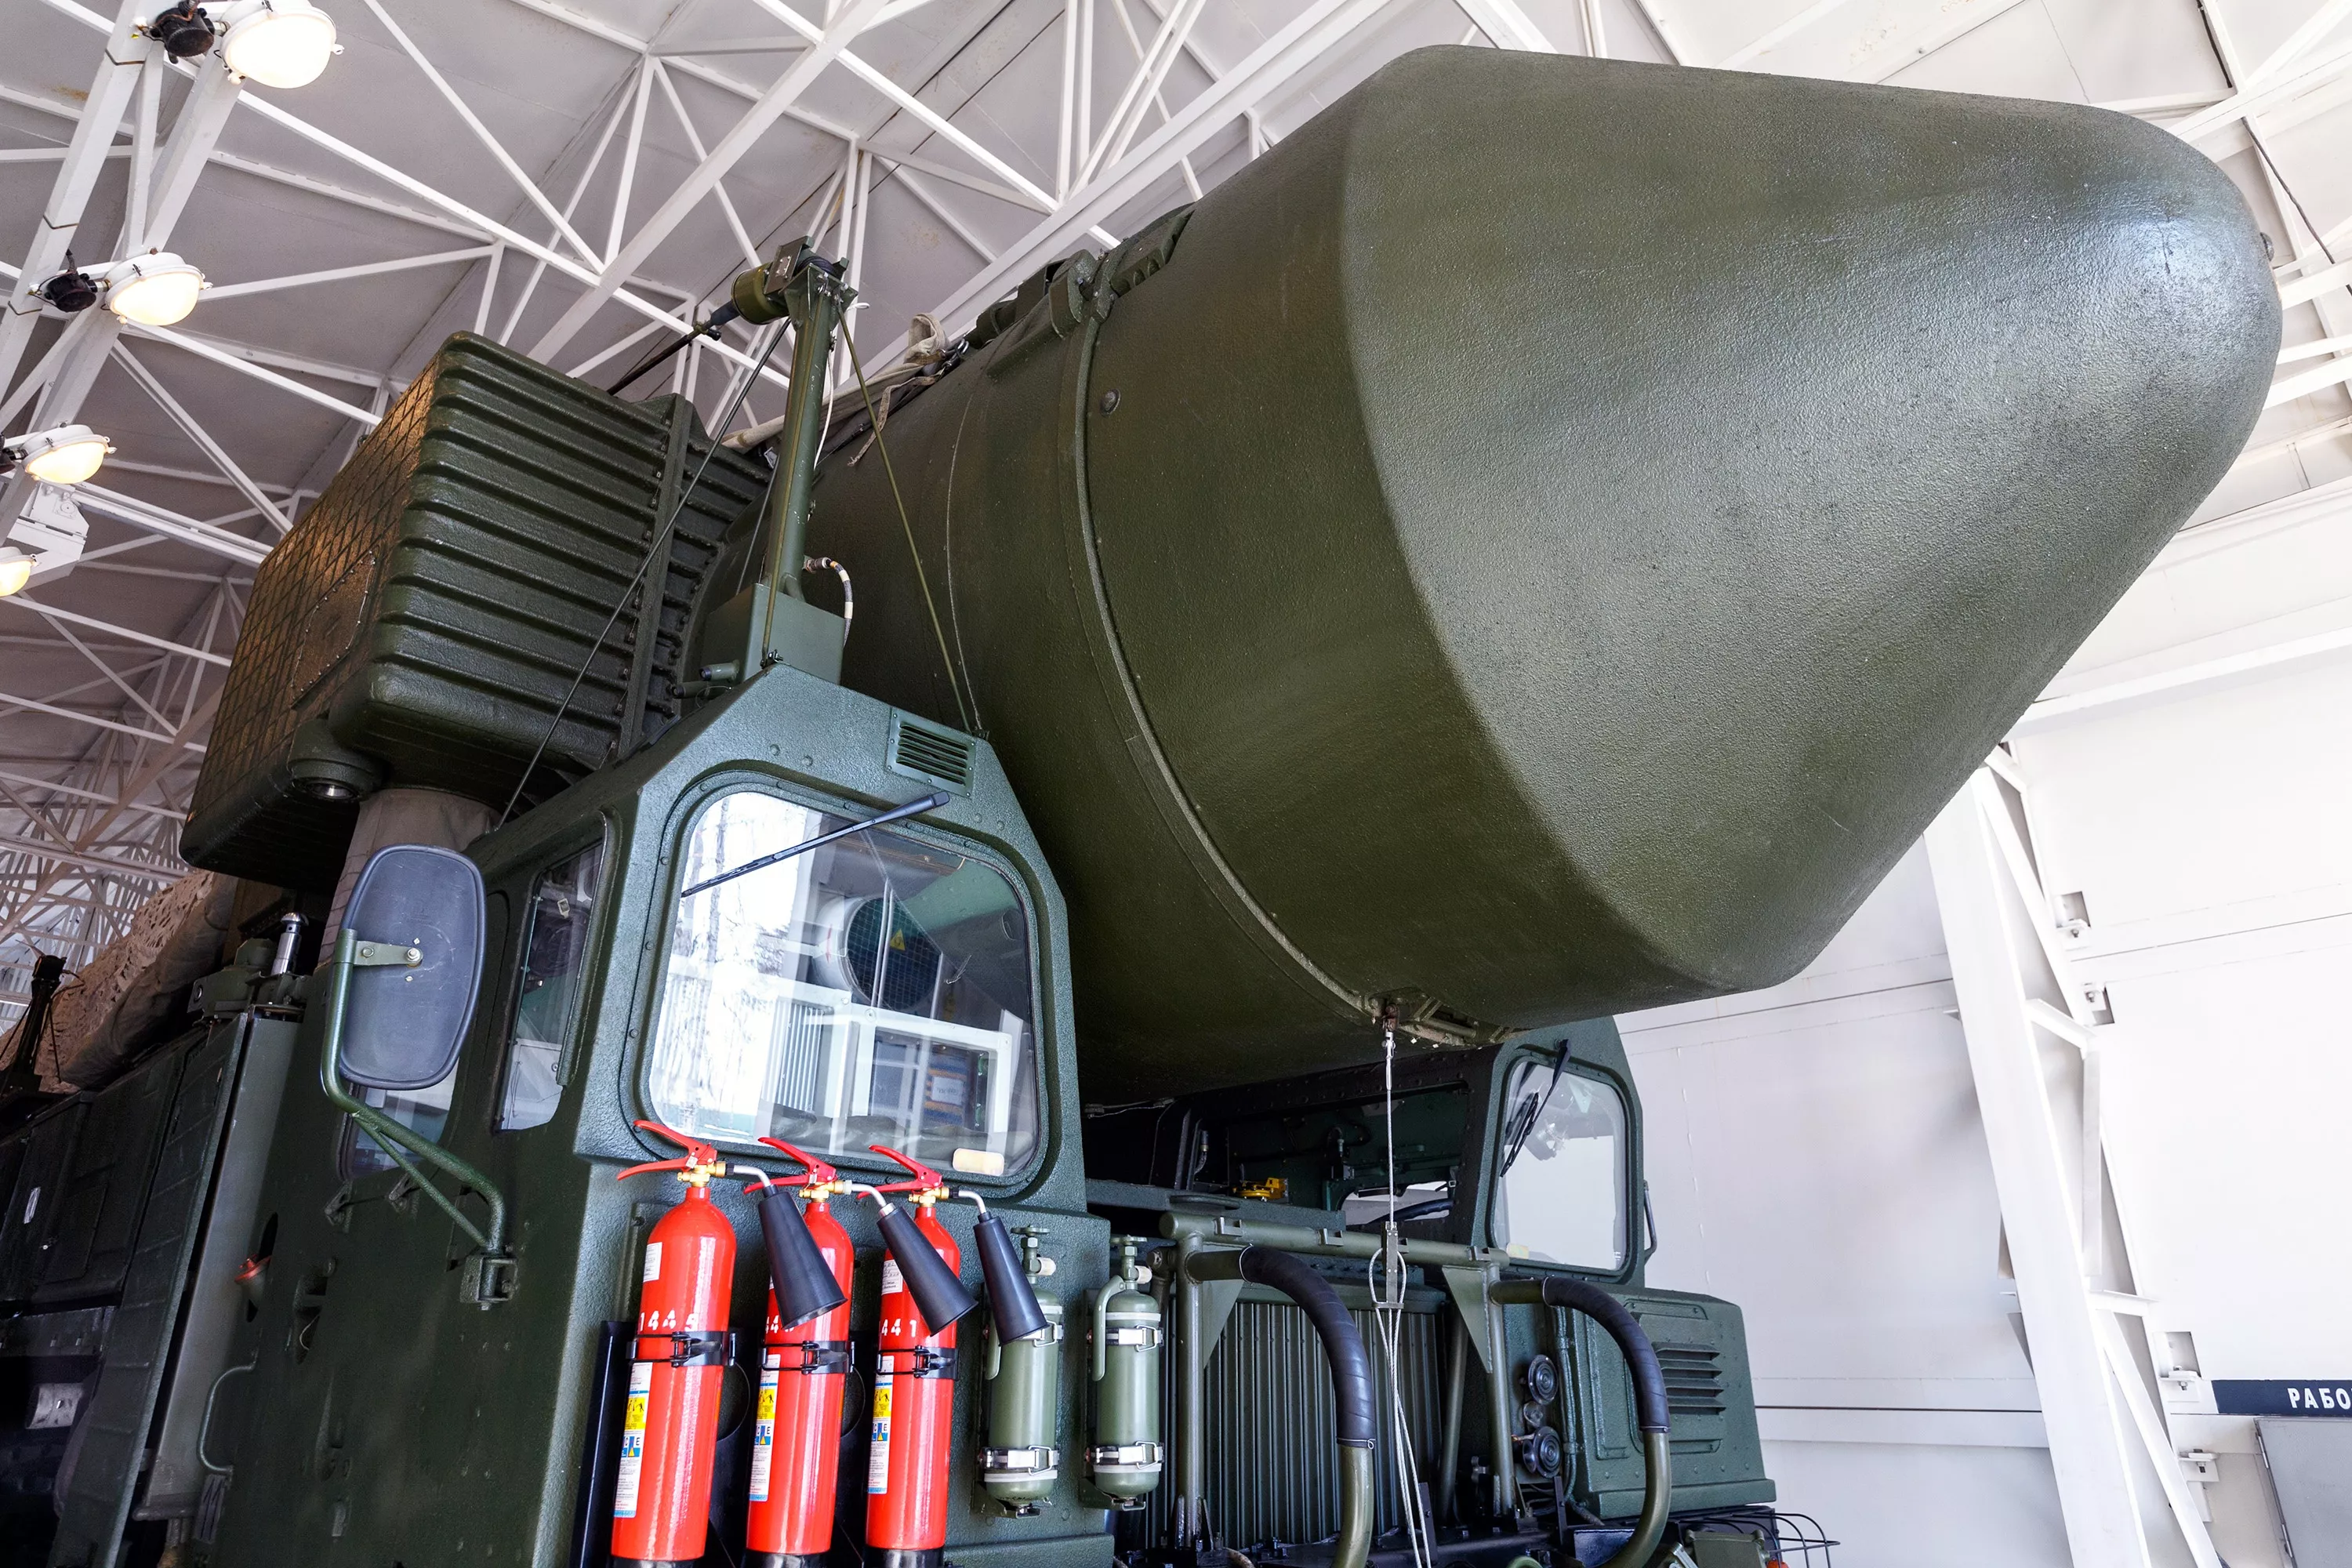 Les Russes ont lancé le missile balistique intercontinental SS-27 Mod 2, d'une portée de 12 000 kilomètres, qui peut transporter une ogive nucléaire d'une puissance allant jusqu'à 500 kilotonnes.-5